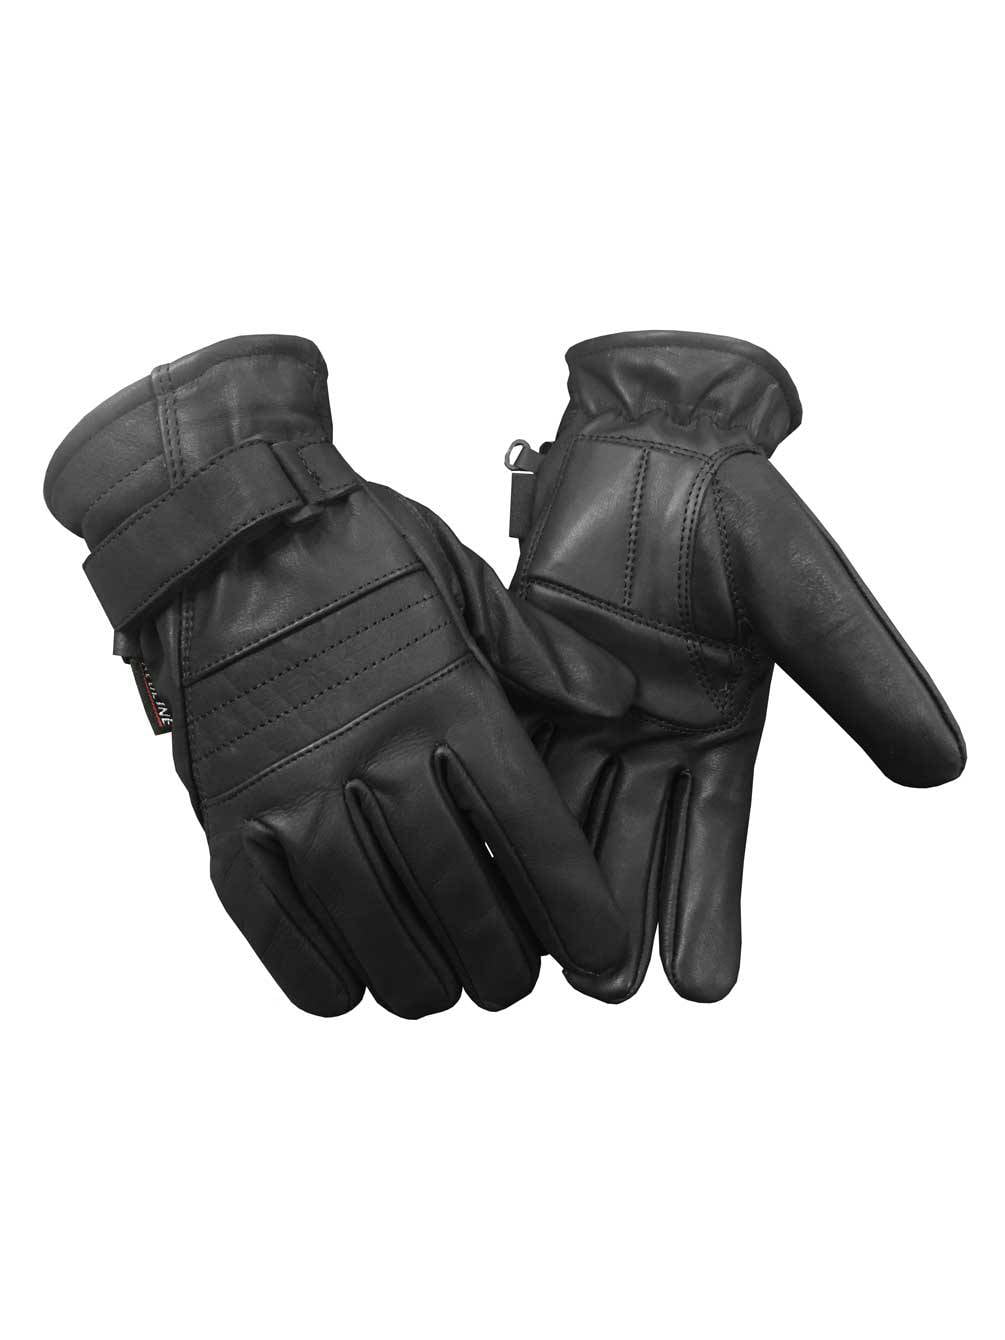 Redline Men's Gel Padded Full-Finger Leather Motorcycle Gloves Black G-056 